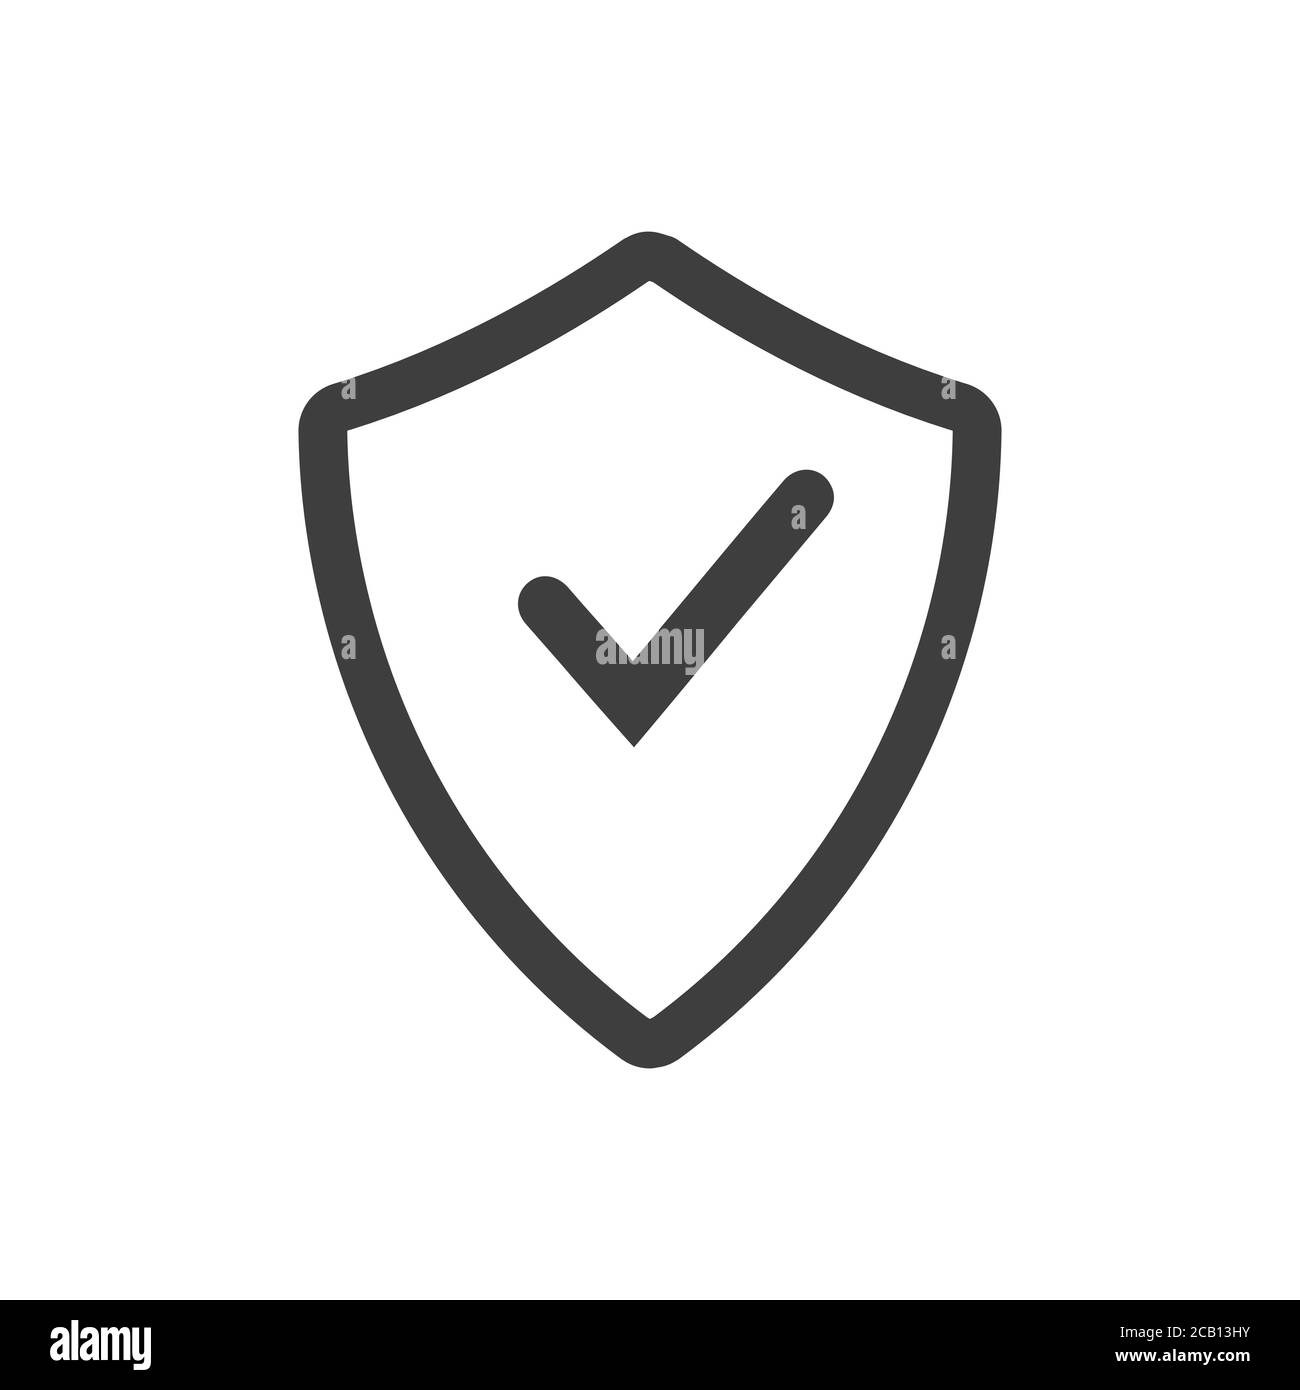 Security Shield-Symbol. Schild mit einem Häkchen in der Mitte Schutz Symbol  Konzept. Vektordarstellung auf weißem Hintergrund isoliert  Stock-Vektorgrafik - Alamy